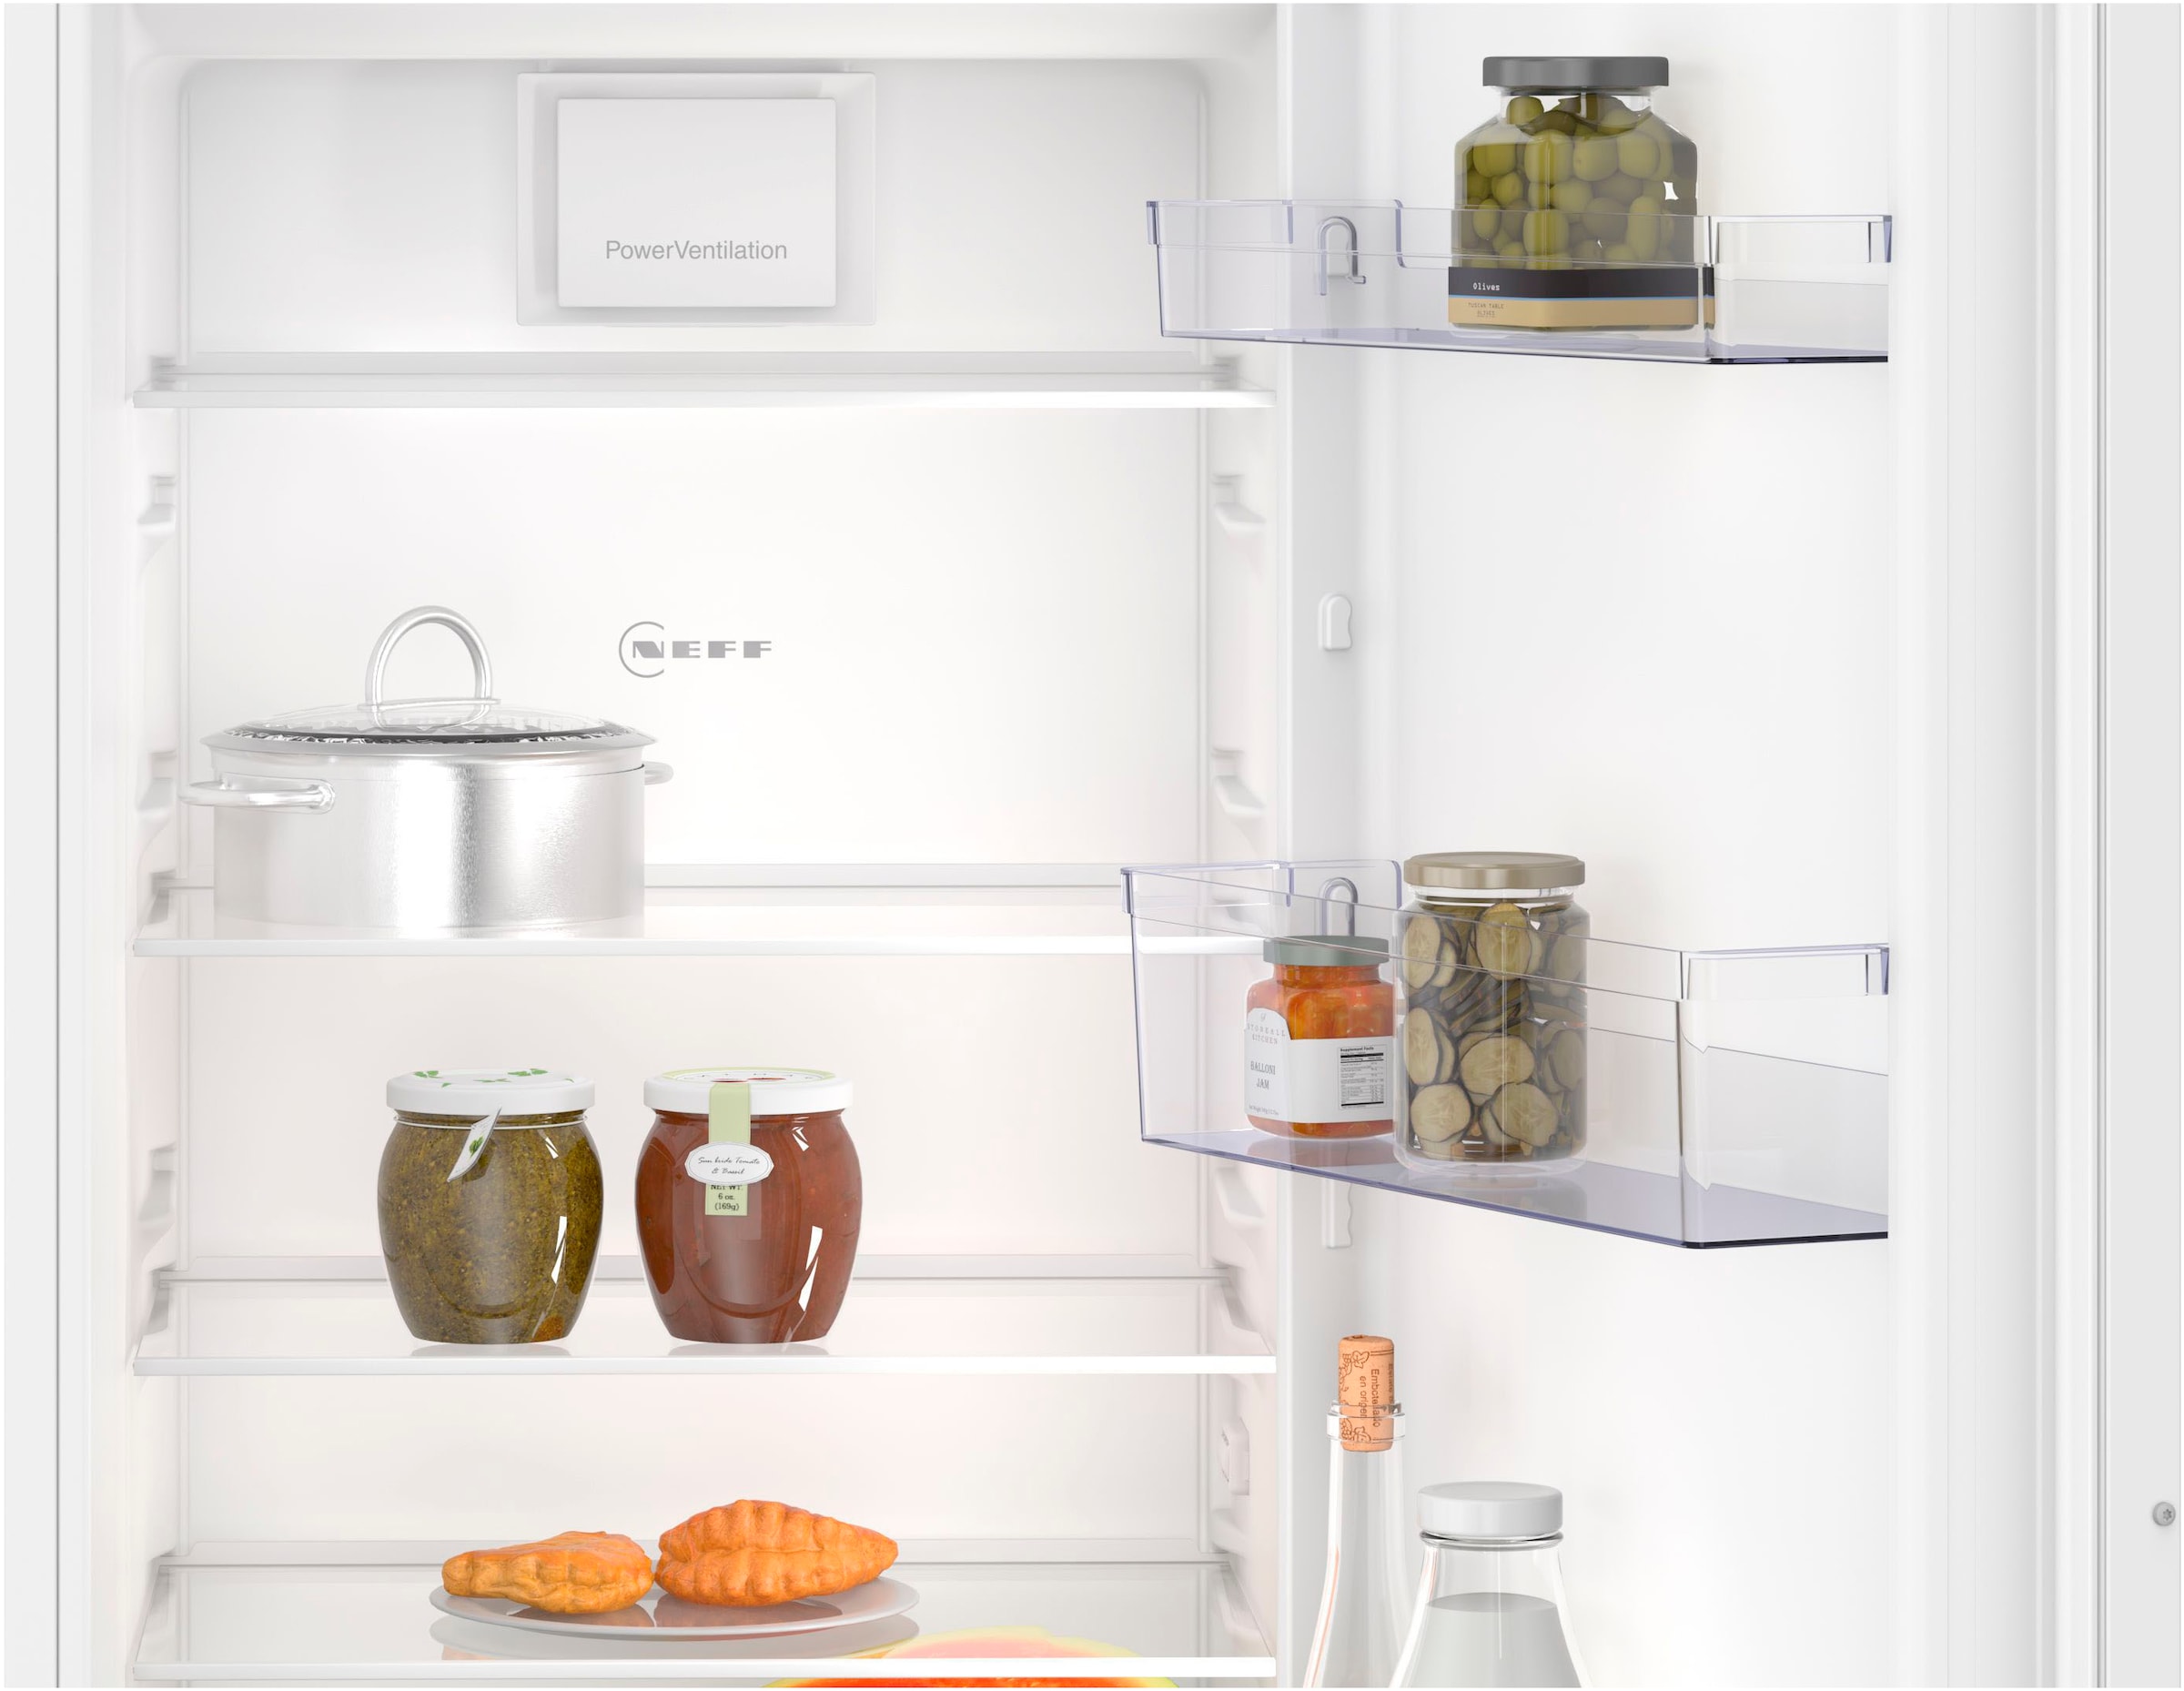 NEFF Einbaukühlschrank »KI2821SE0«, KI2821SE0, 177,2 cm hoch, 54,1 cm breit, Fresh Safe: Schublade für flexible Lagerung von Obst & Gemüse